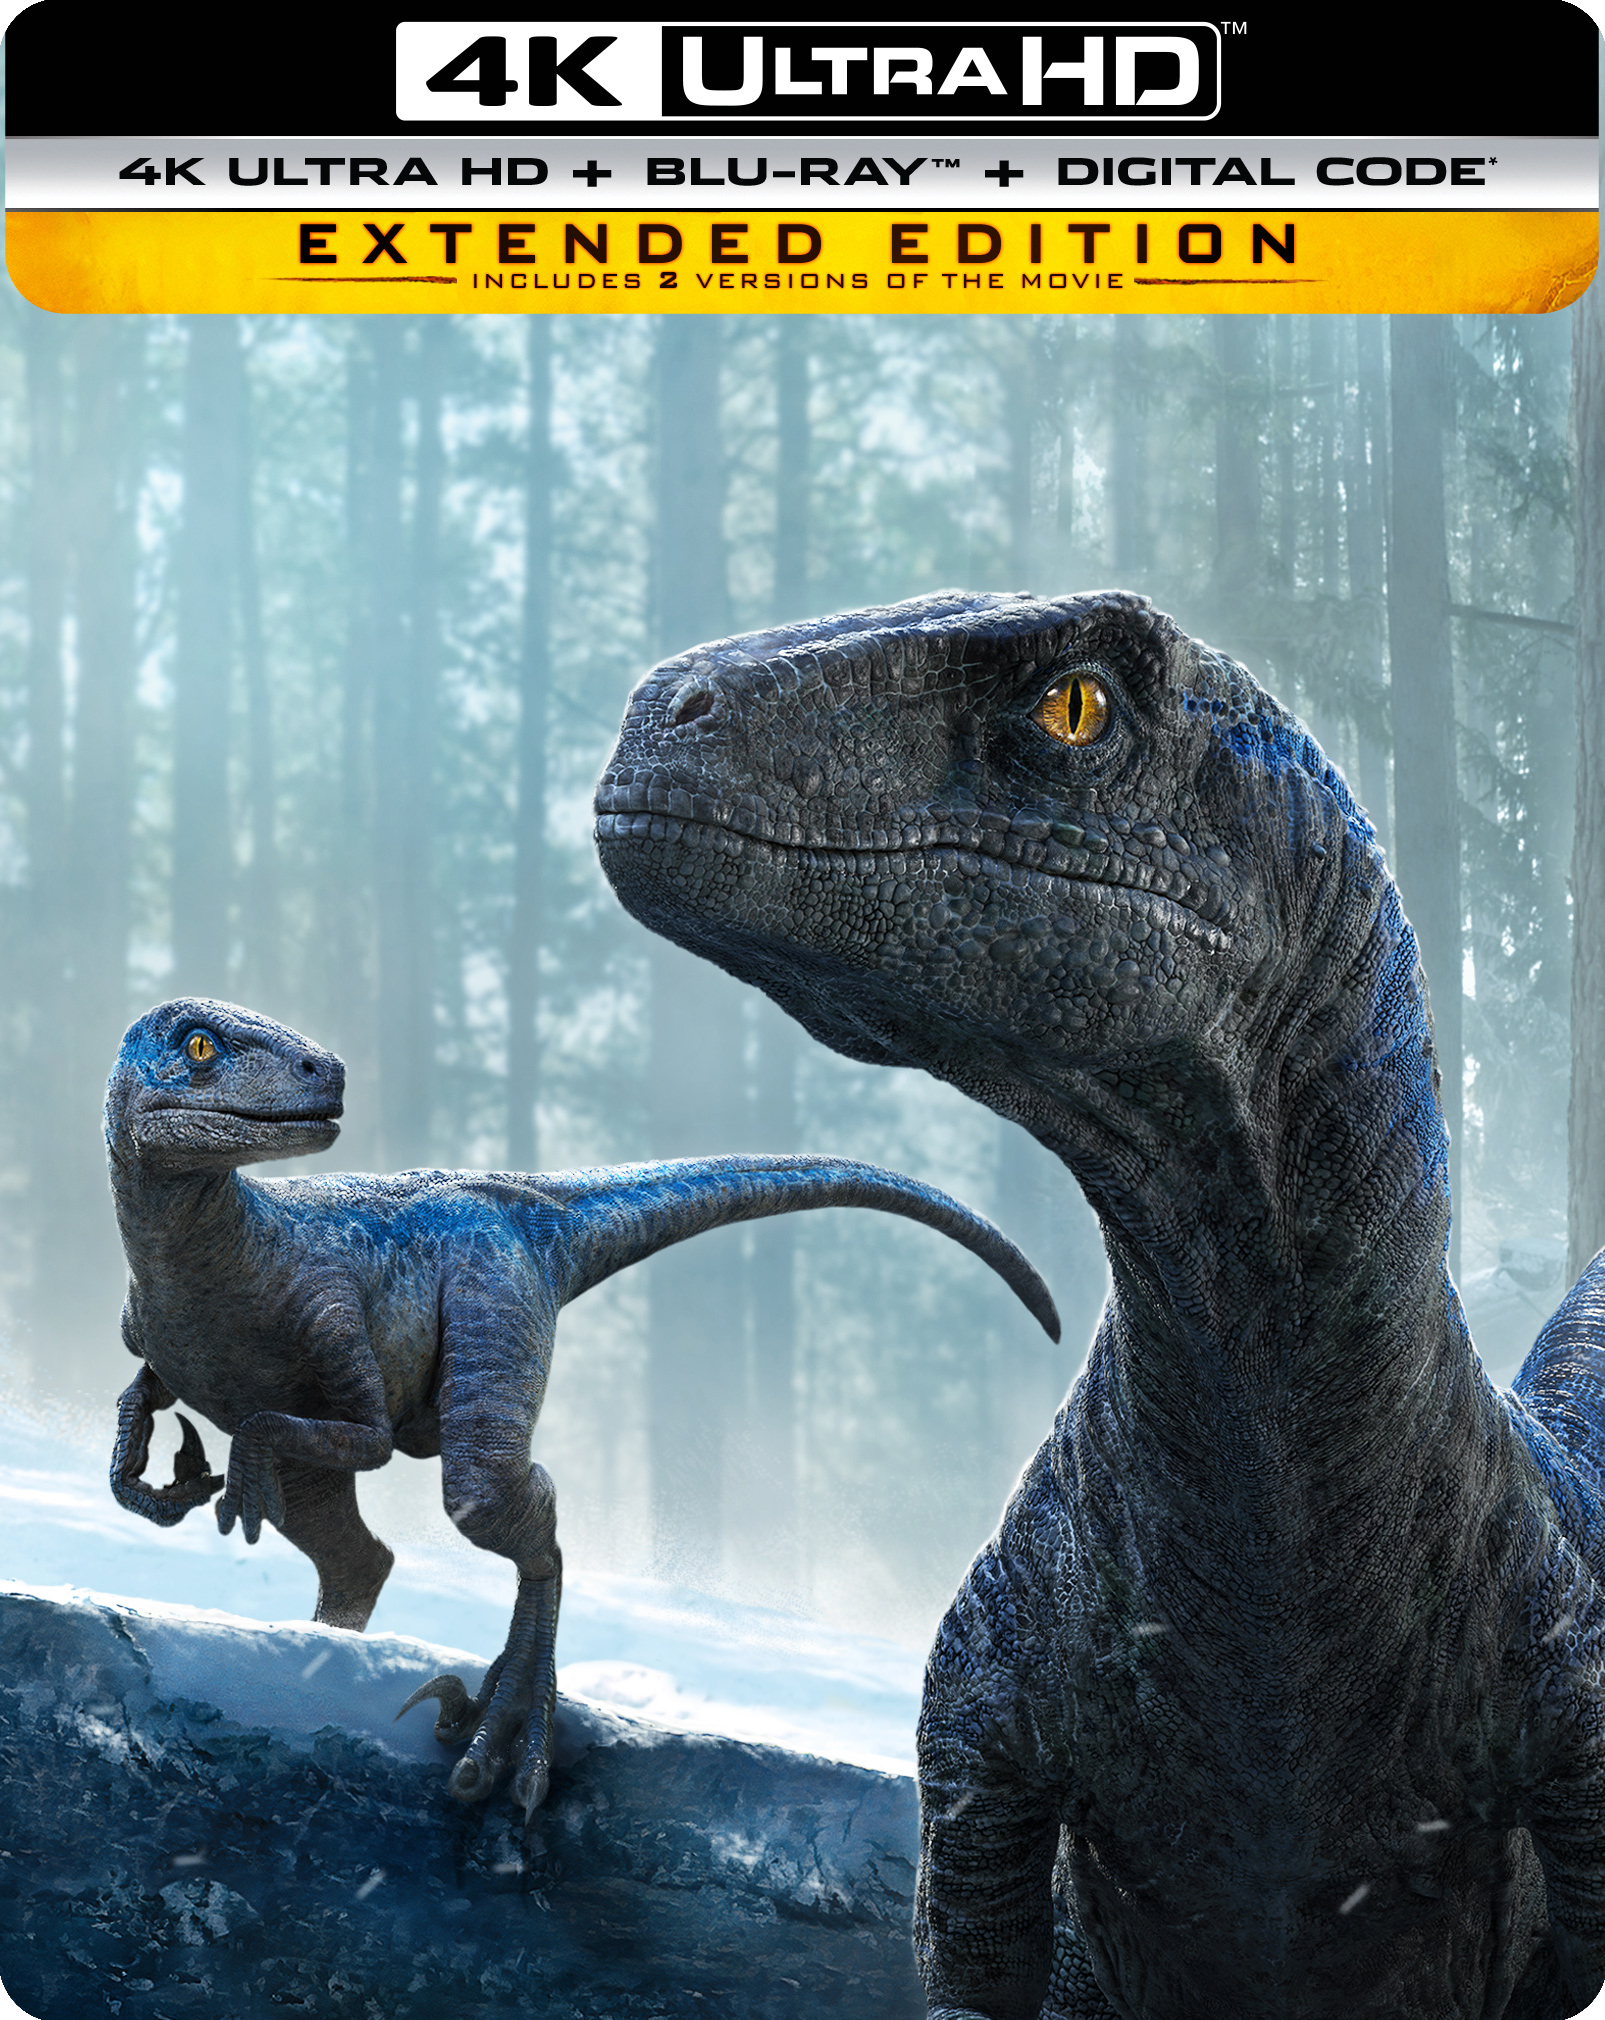 The Lost World: Jurassic Park Steelbook 4K UHD + Blu Ray